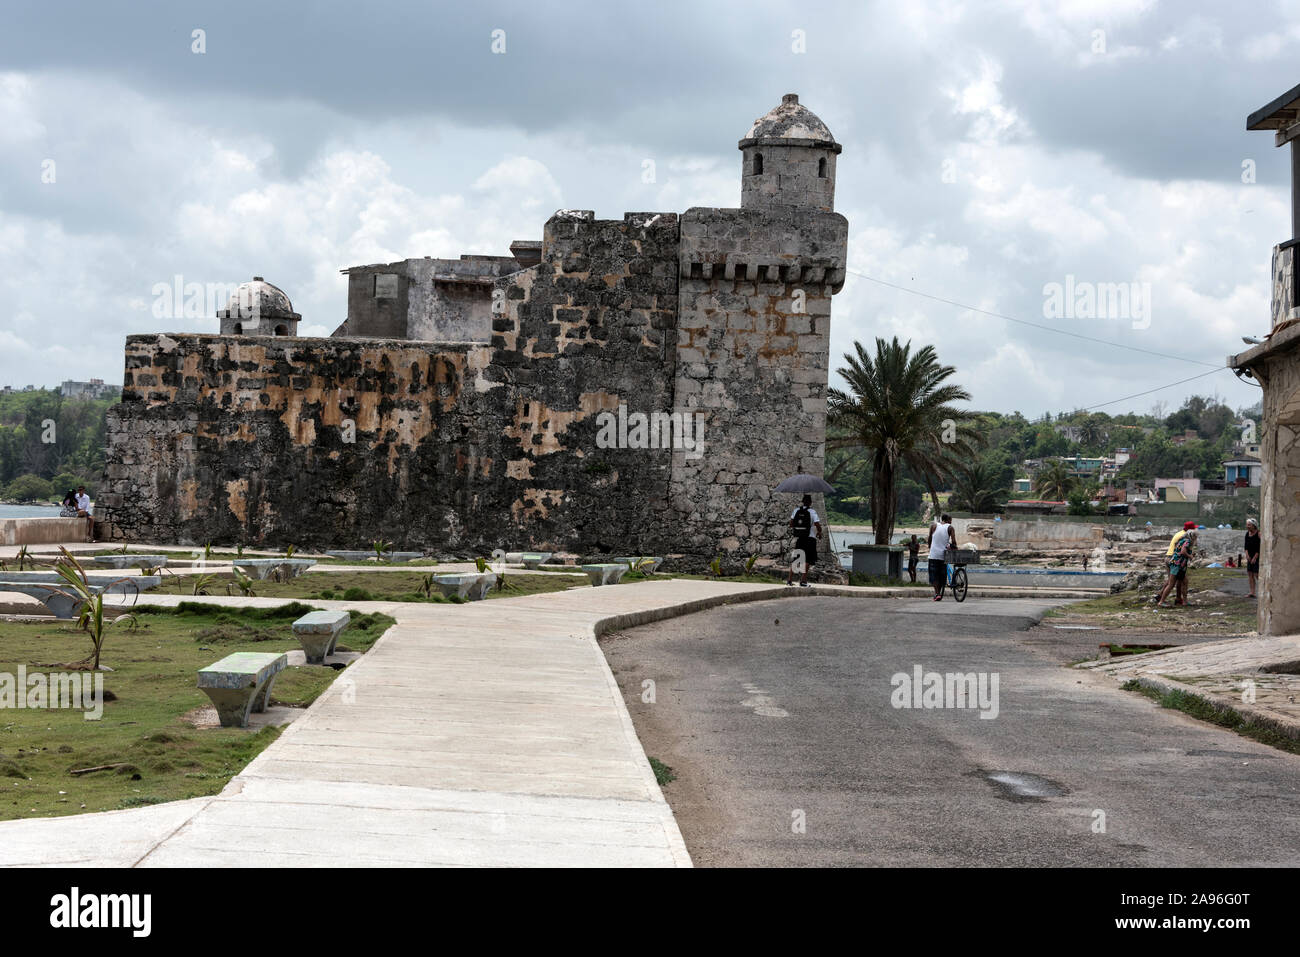 Eine kleine spanische Festung, El Torreón de Cojímar, die dem Meer gegenüber liegt, auf dem Strand von Cojímar, einem Fischerdorf, etwa 12 km östlich von Havnna in Kuba. Der Stockfoto